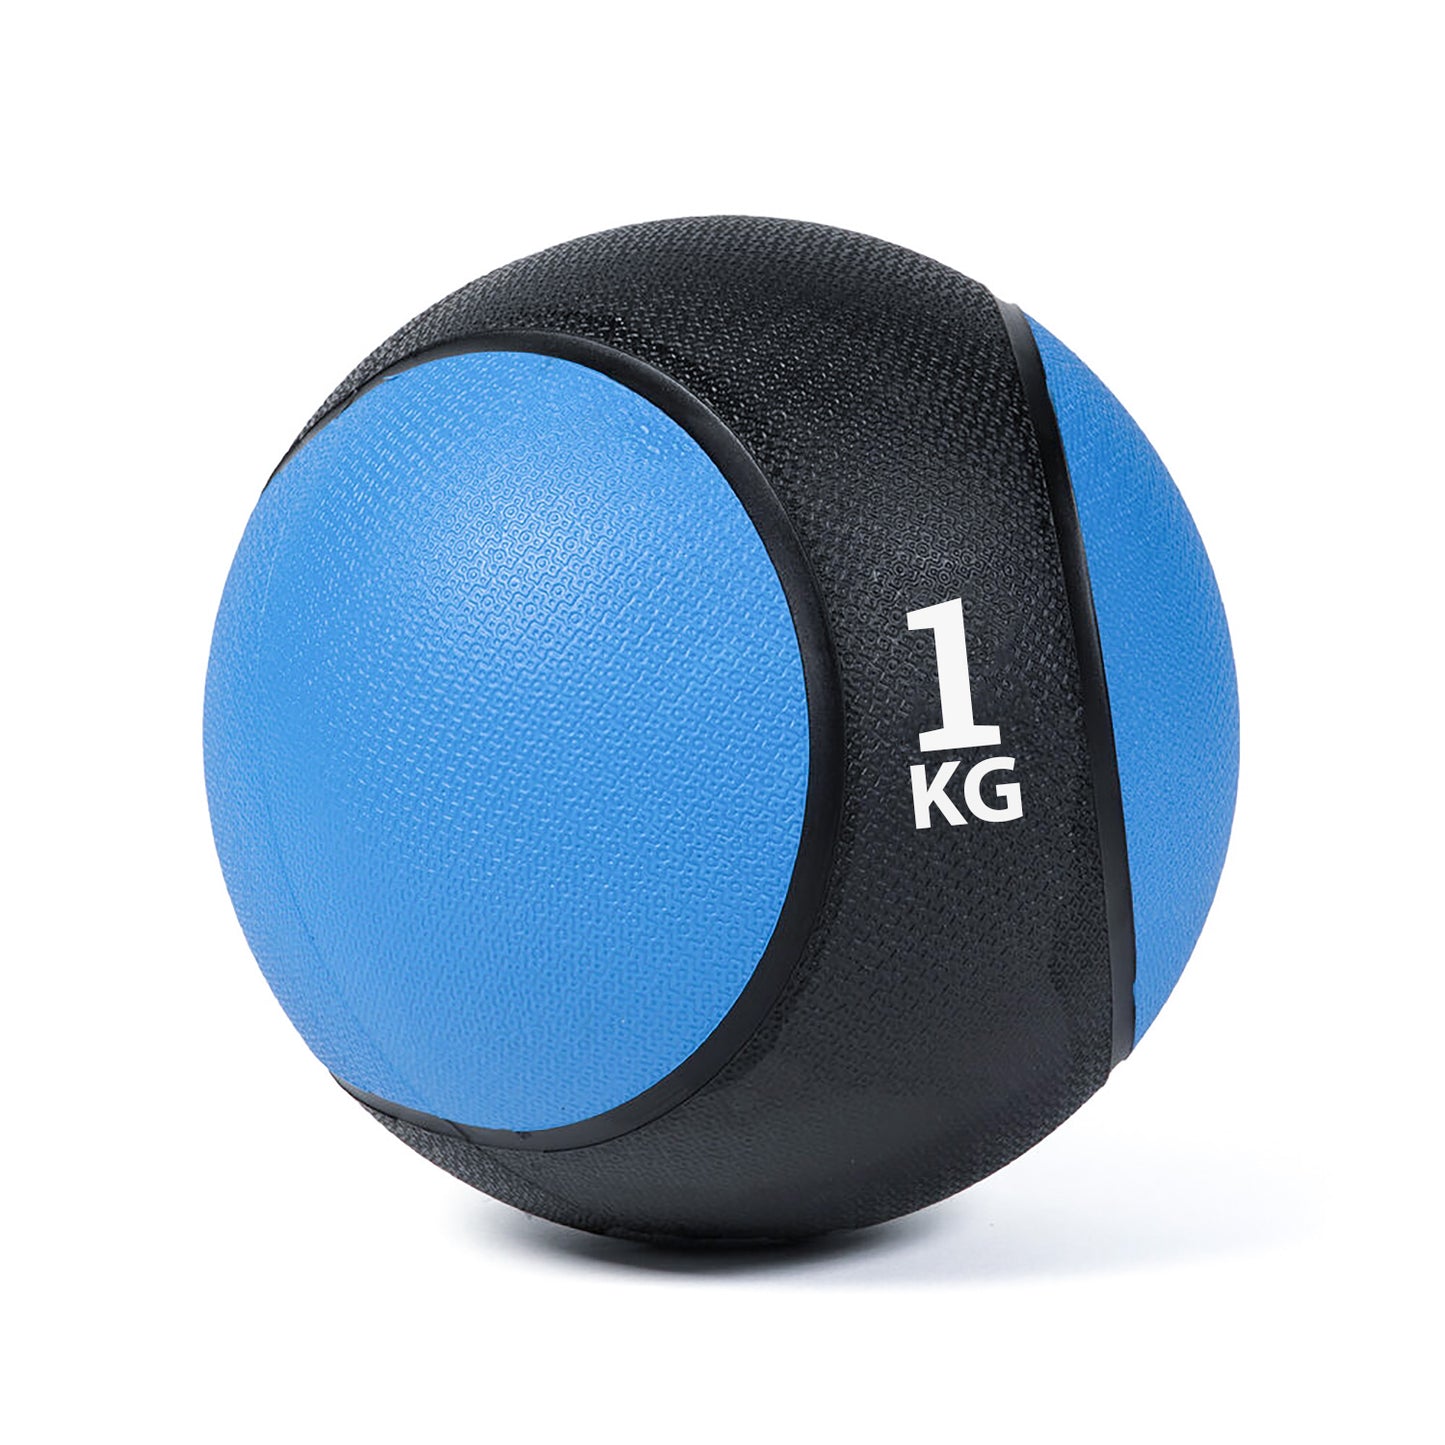 كرة طبية من المطاط لاعادة التأهيل و اللياقة البدنية - لون اسود و ازرق - وزن 1 كيلو جرام - Kanteen - كانتين